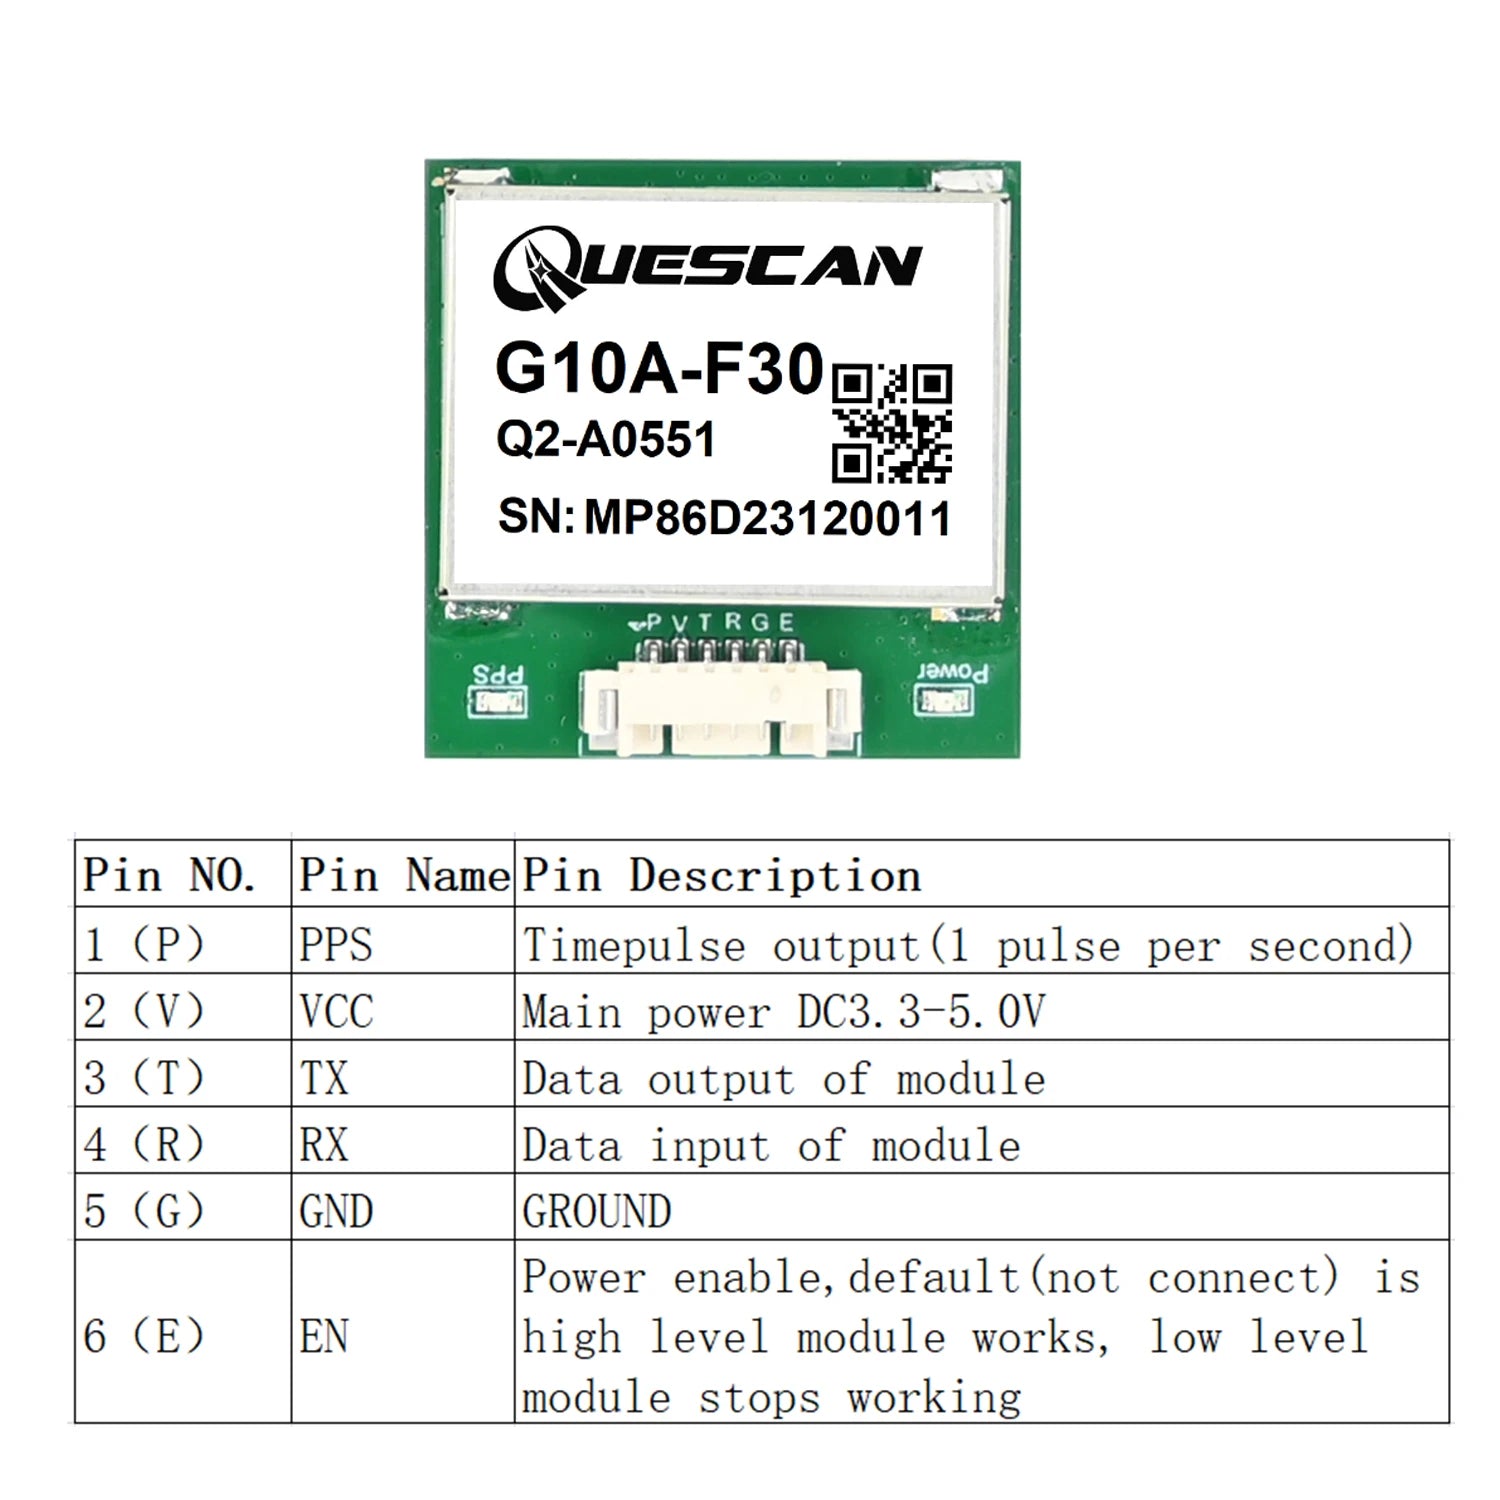 QUESCAN UBX M10050 M10 GNSS Module, uESCAN G1OA-F30= Q2-A0551 SN: